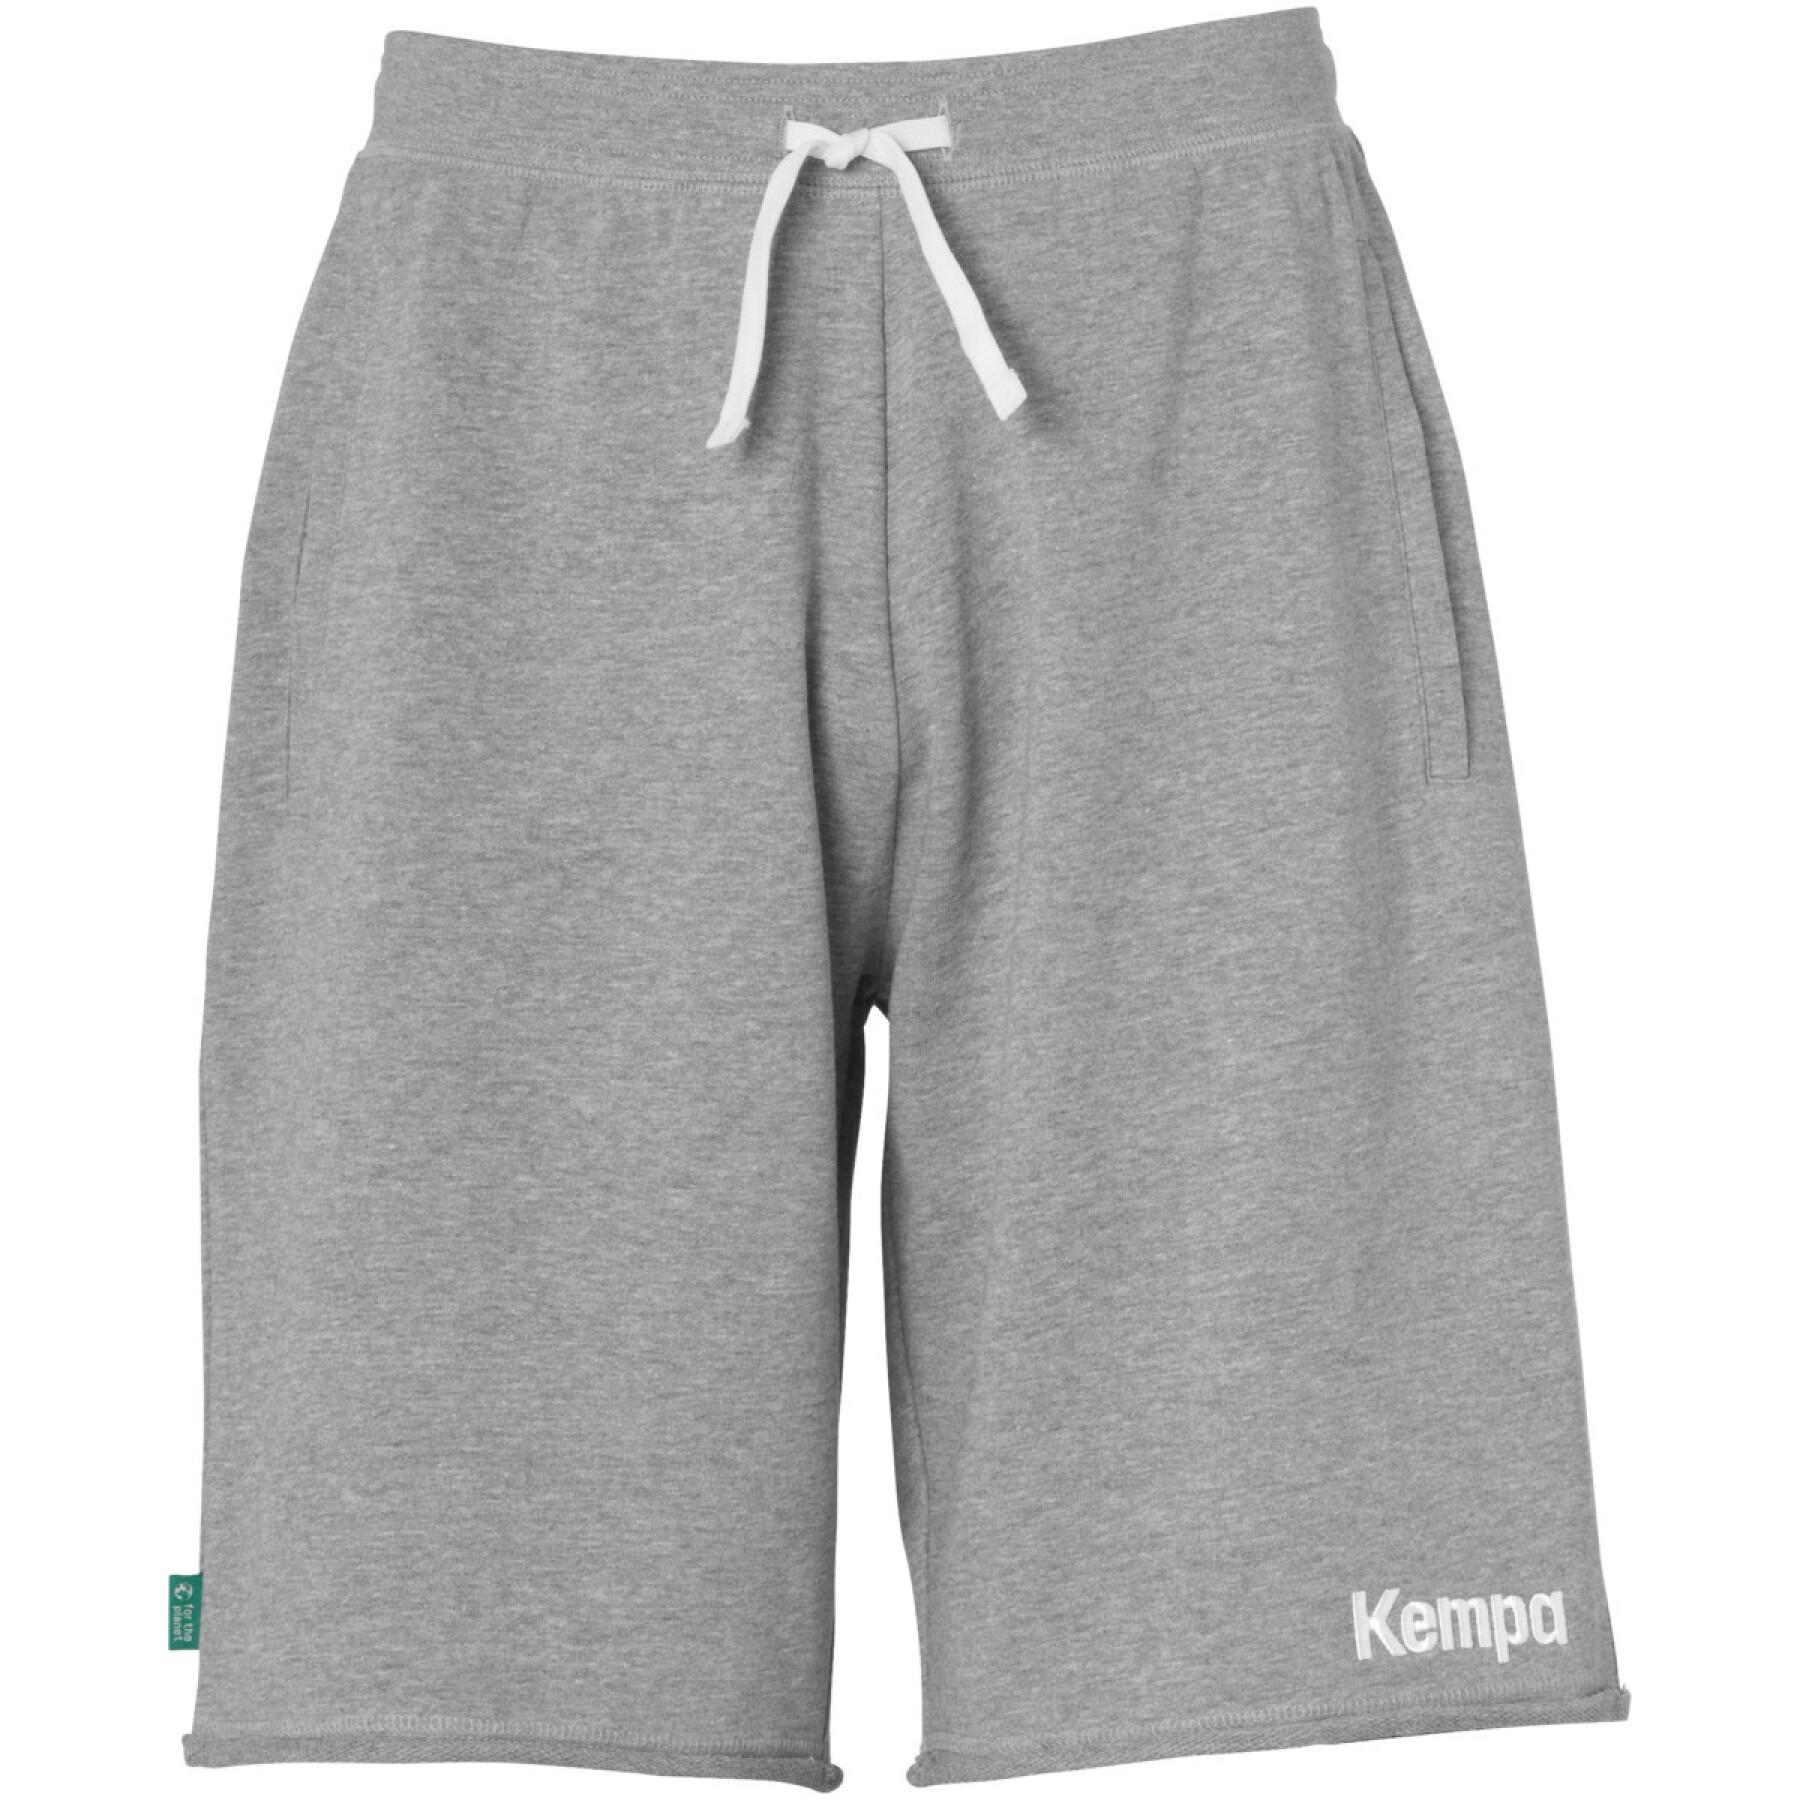 Short Kempa Core 26